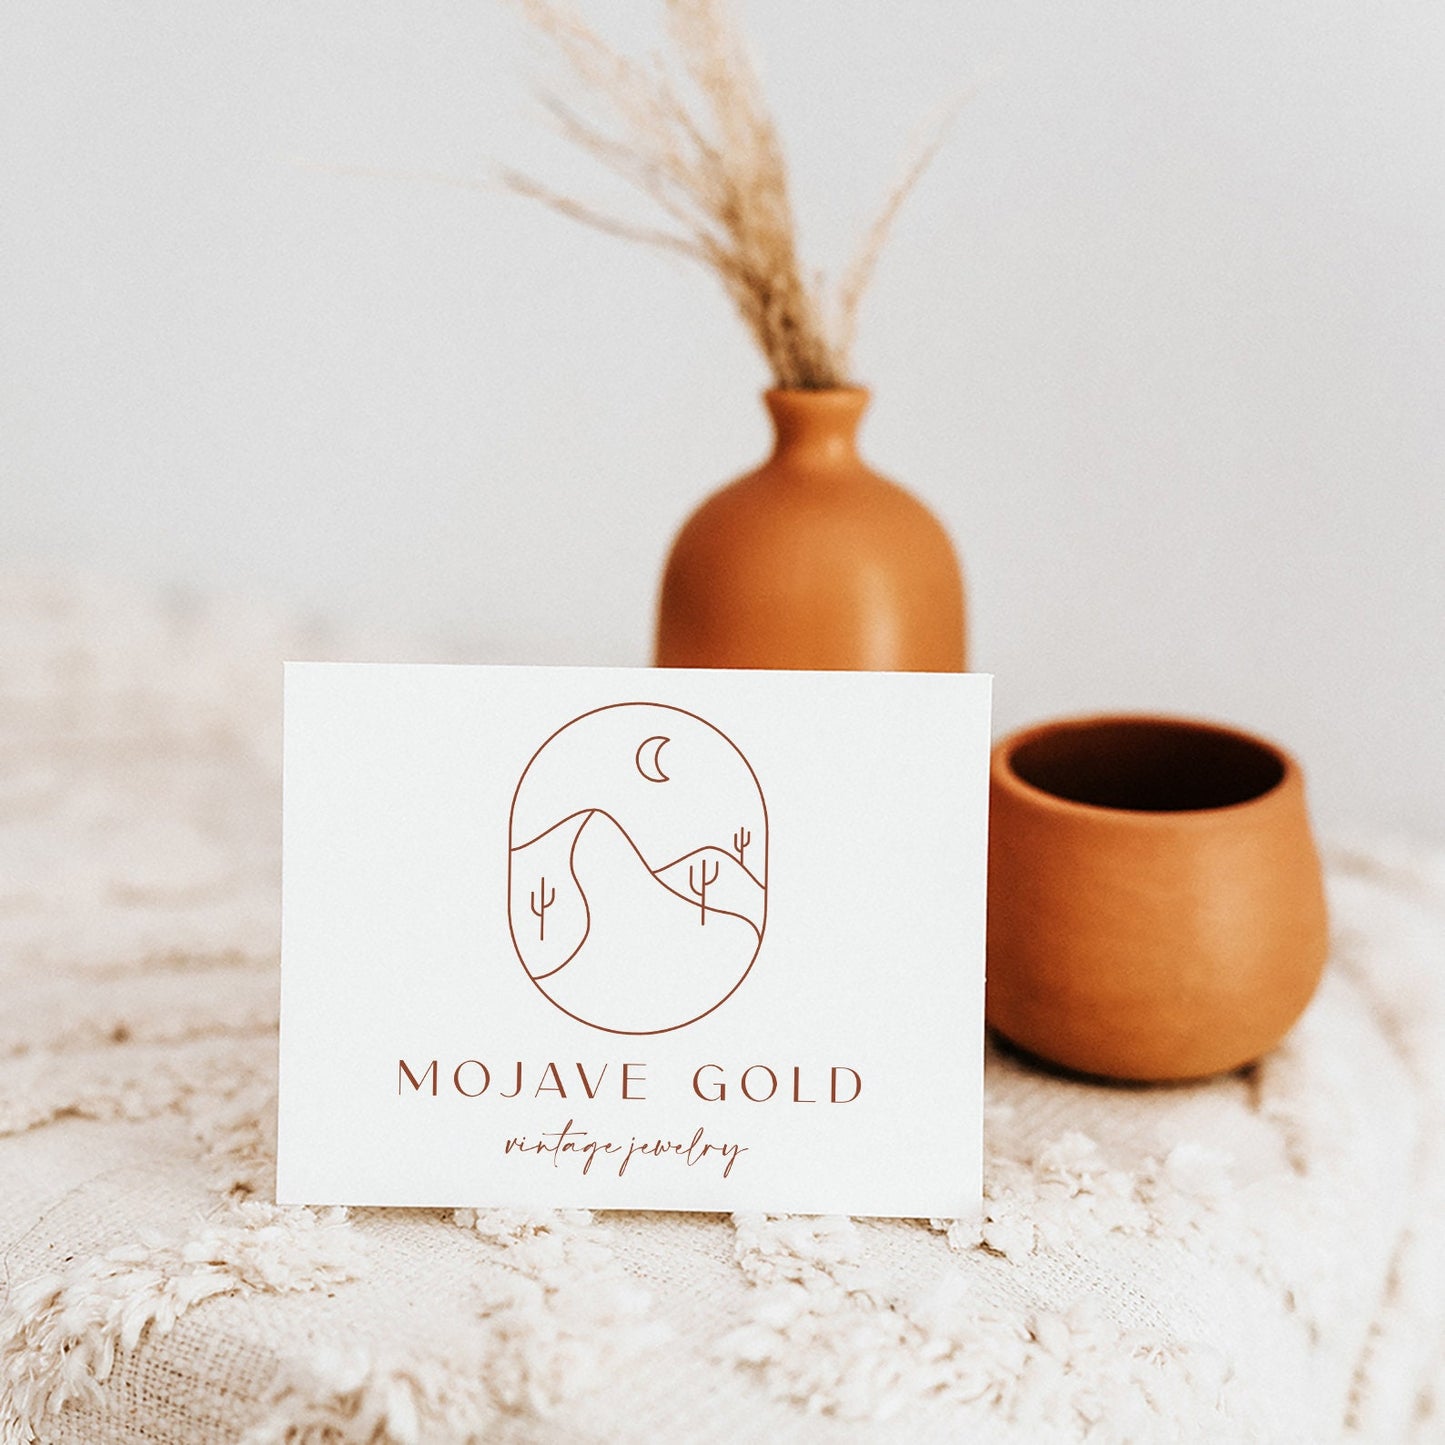 Mojave Gold | Premade Logo Design | Boho, Desert, Bohemian, Line Art